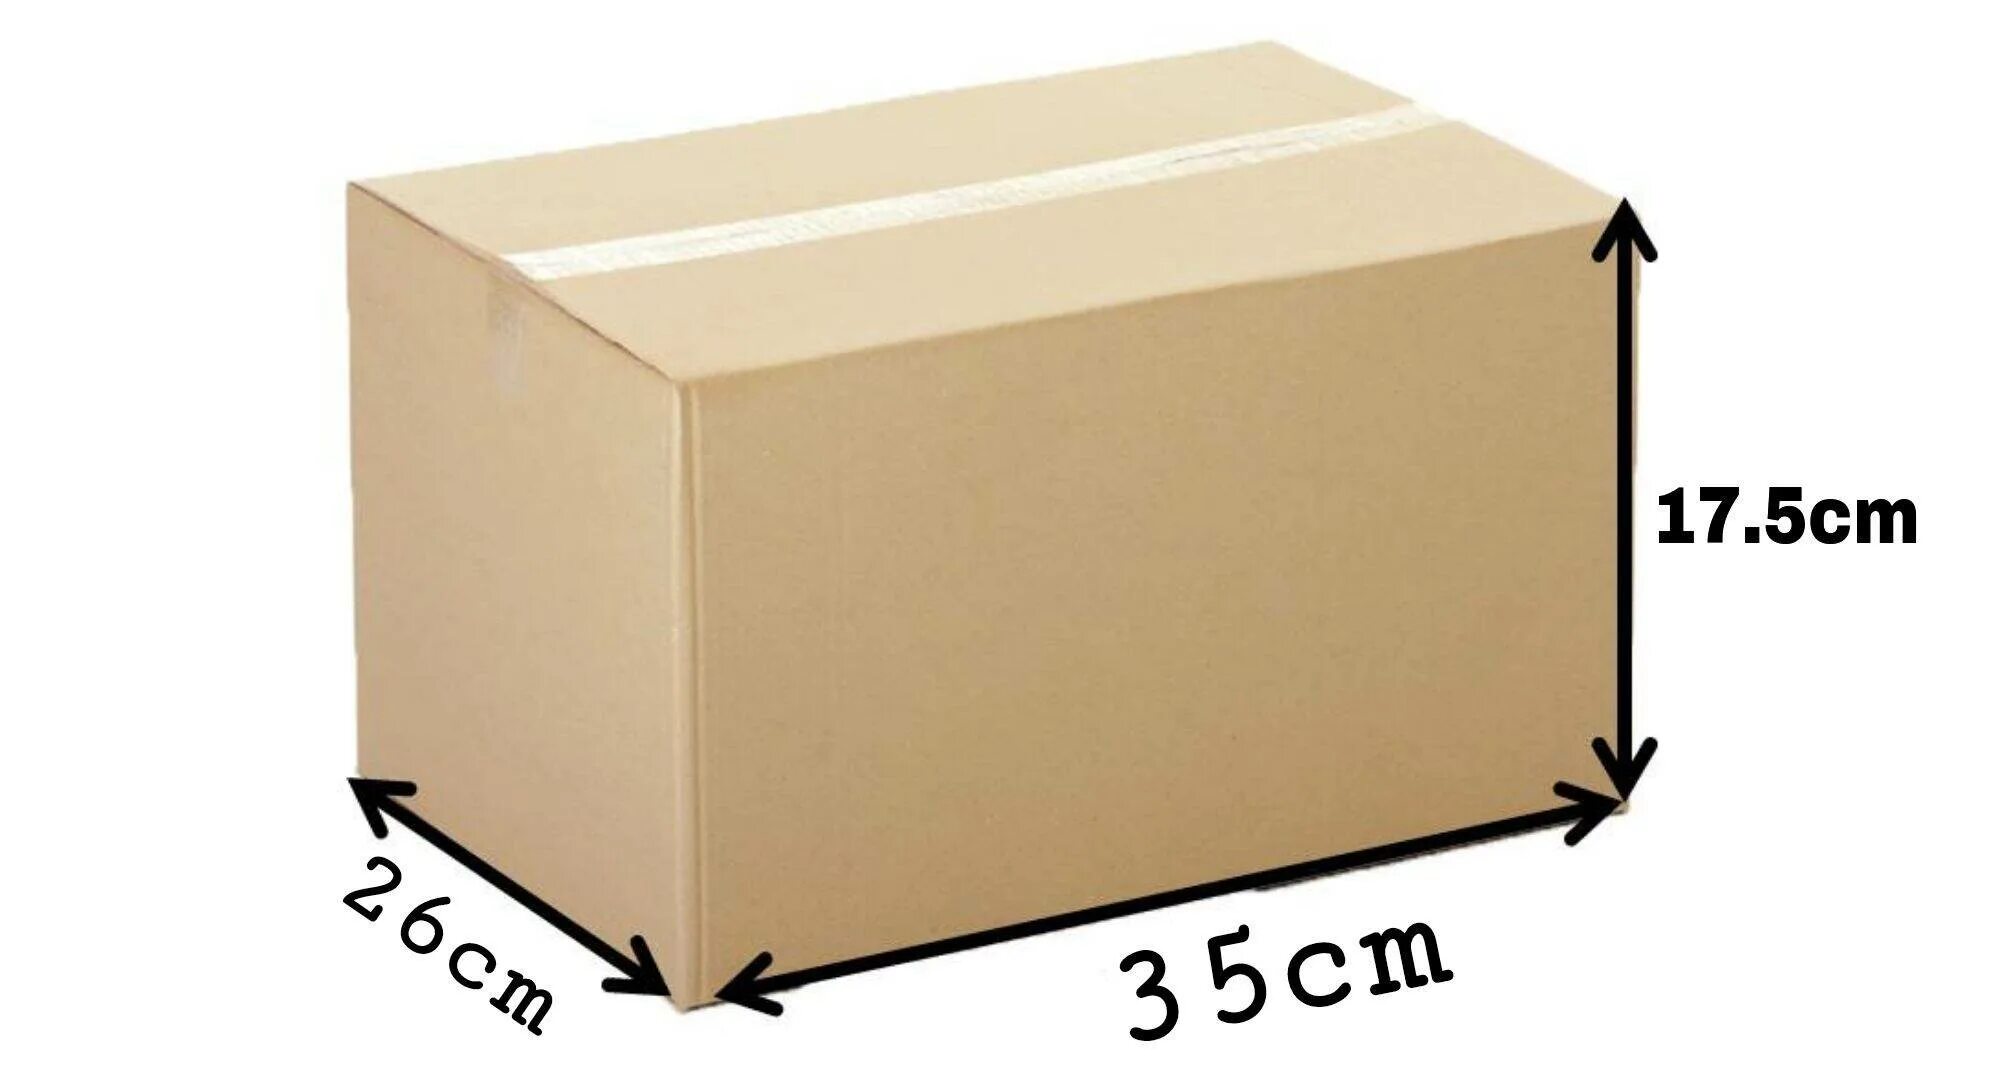 Габариты упаковки. Высота глубина ширина коробки. Высота ширина глубина. Коробка длина ширина высота. Коробка ширина глубина высота.